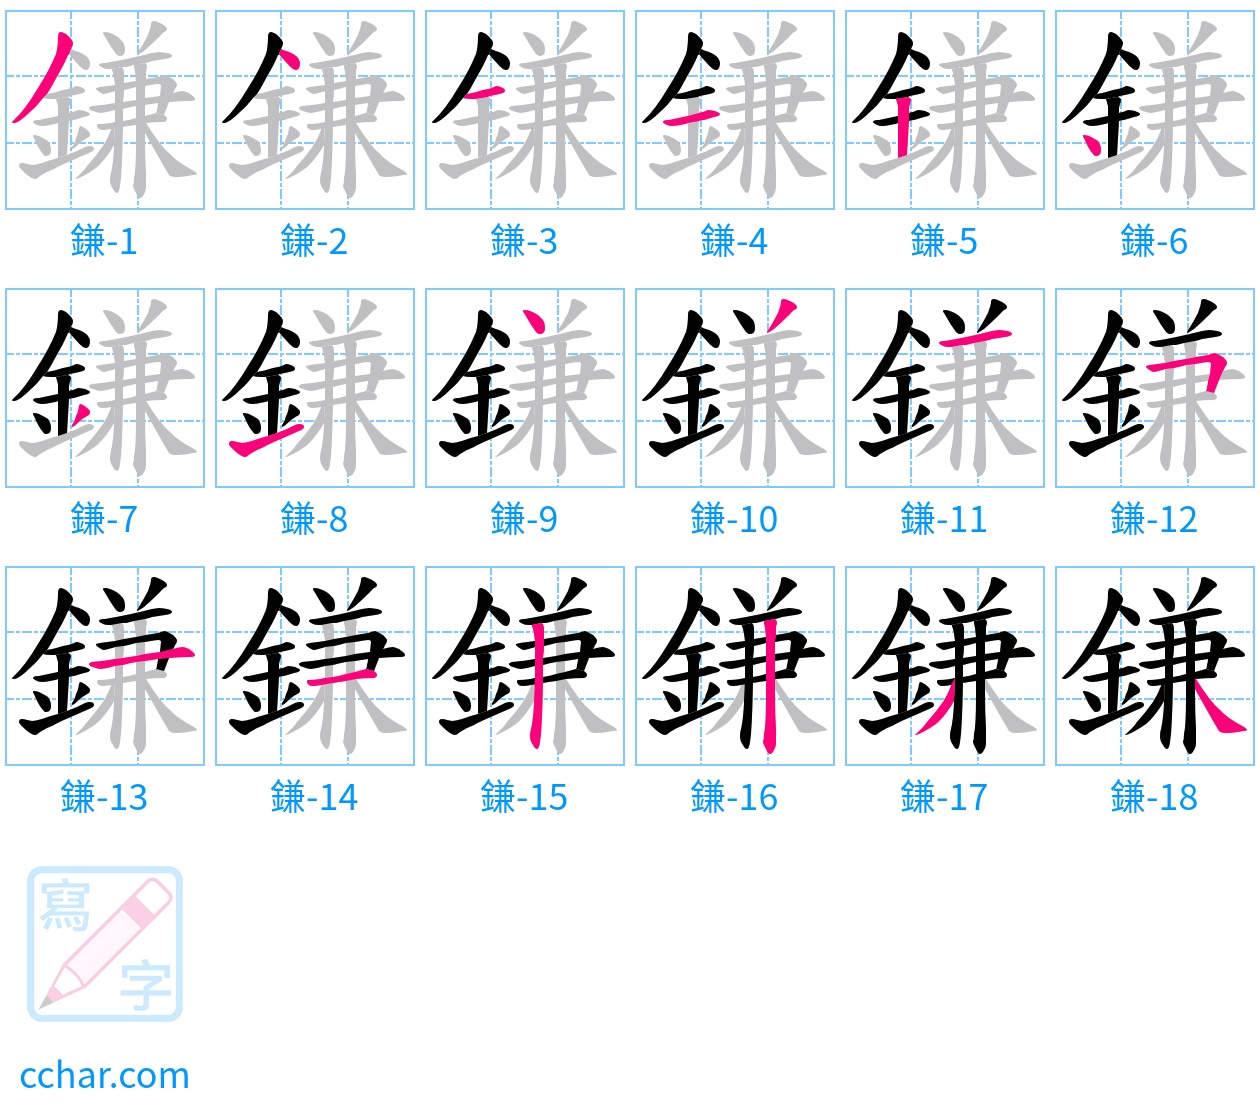 鎌 stroke order step-by-step diagram